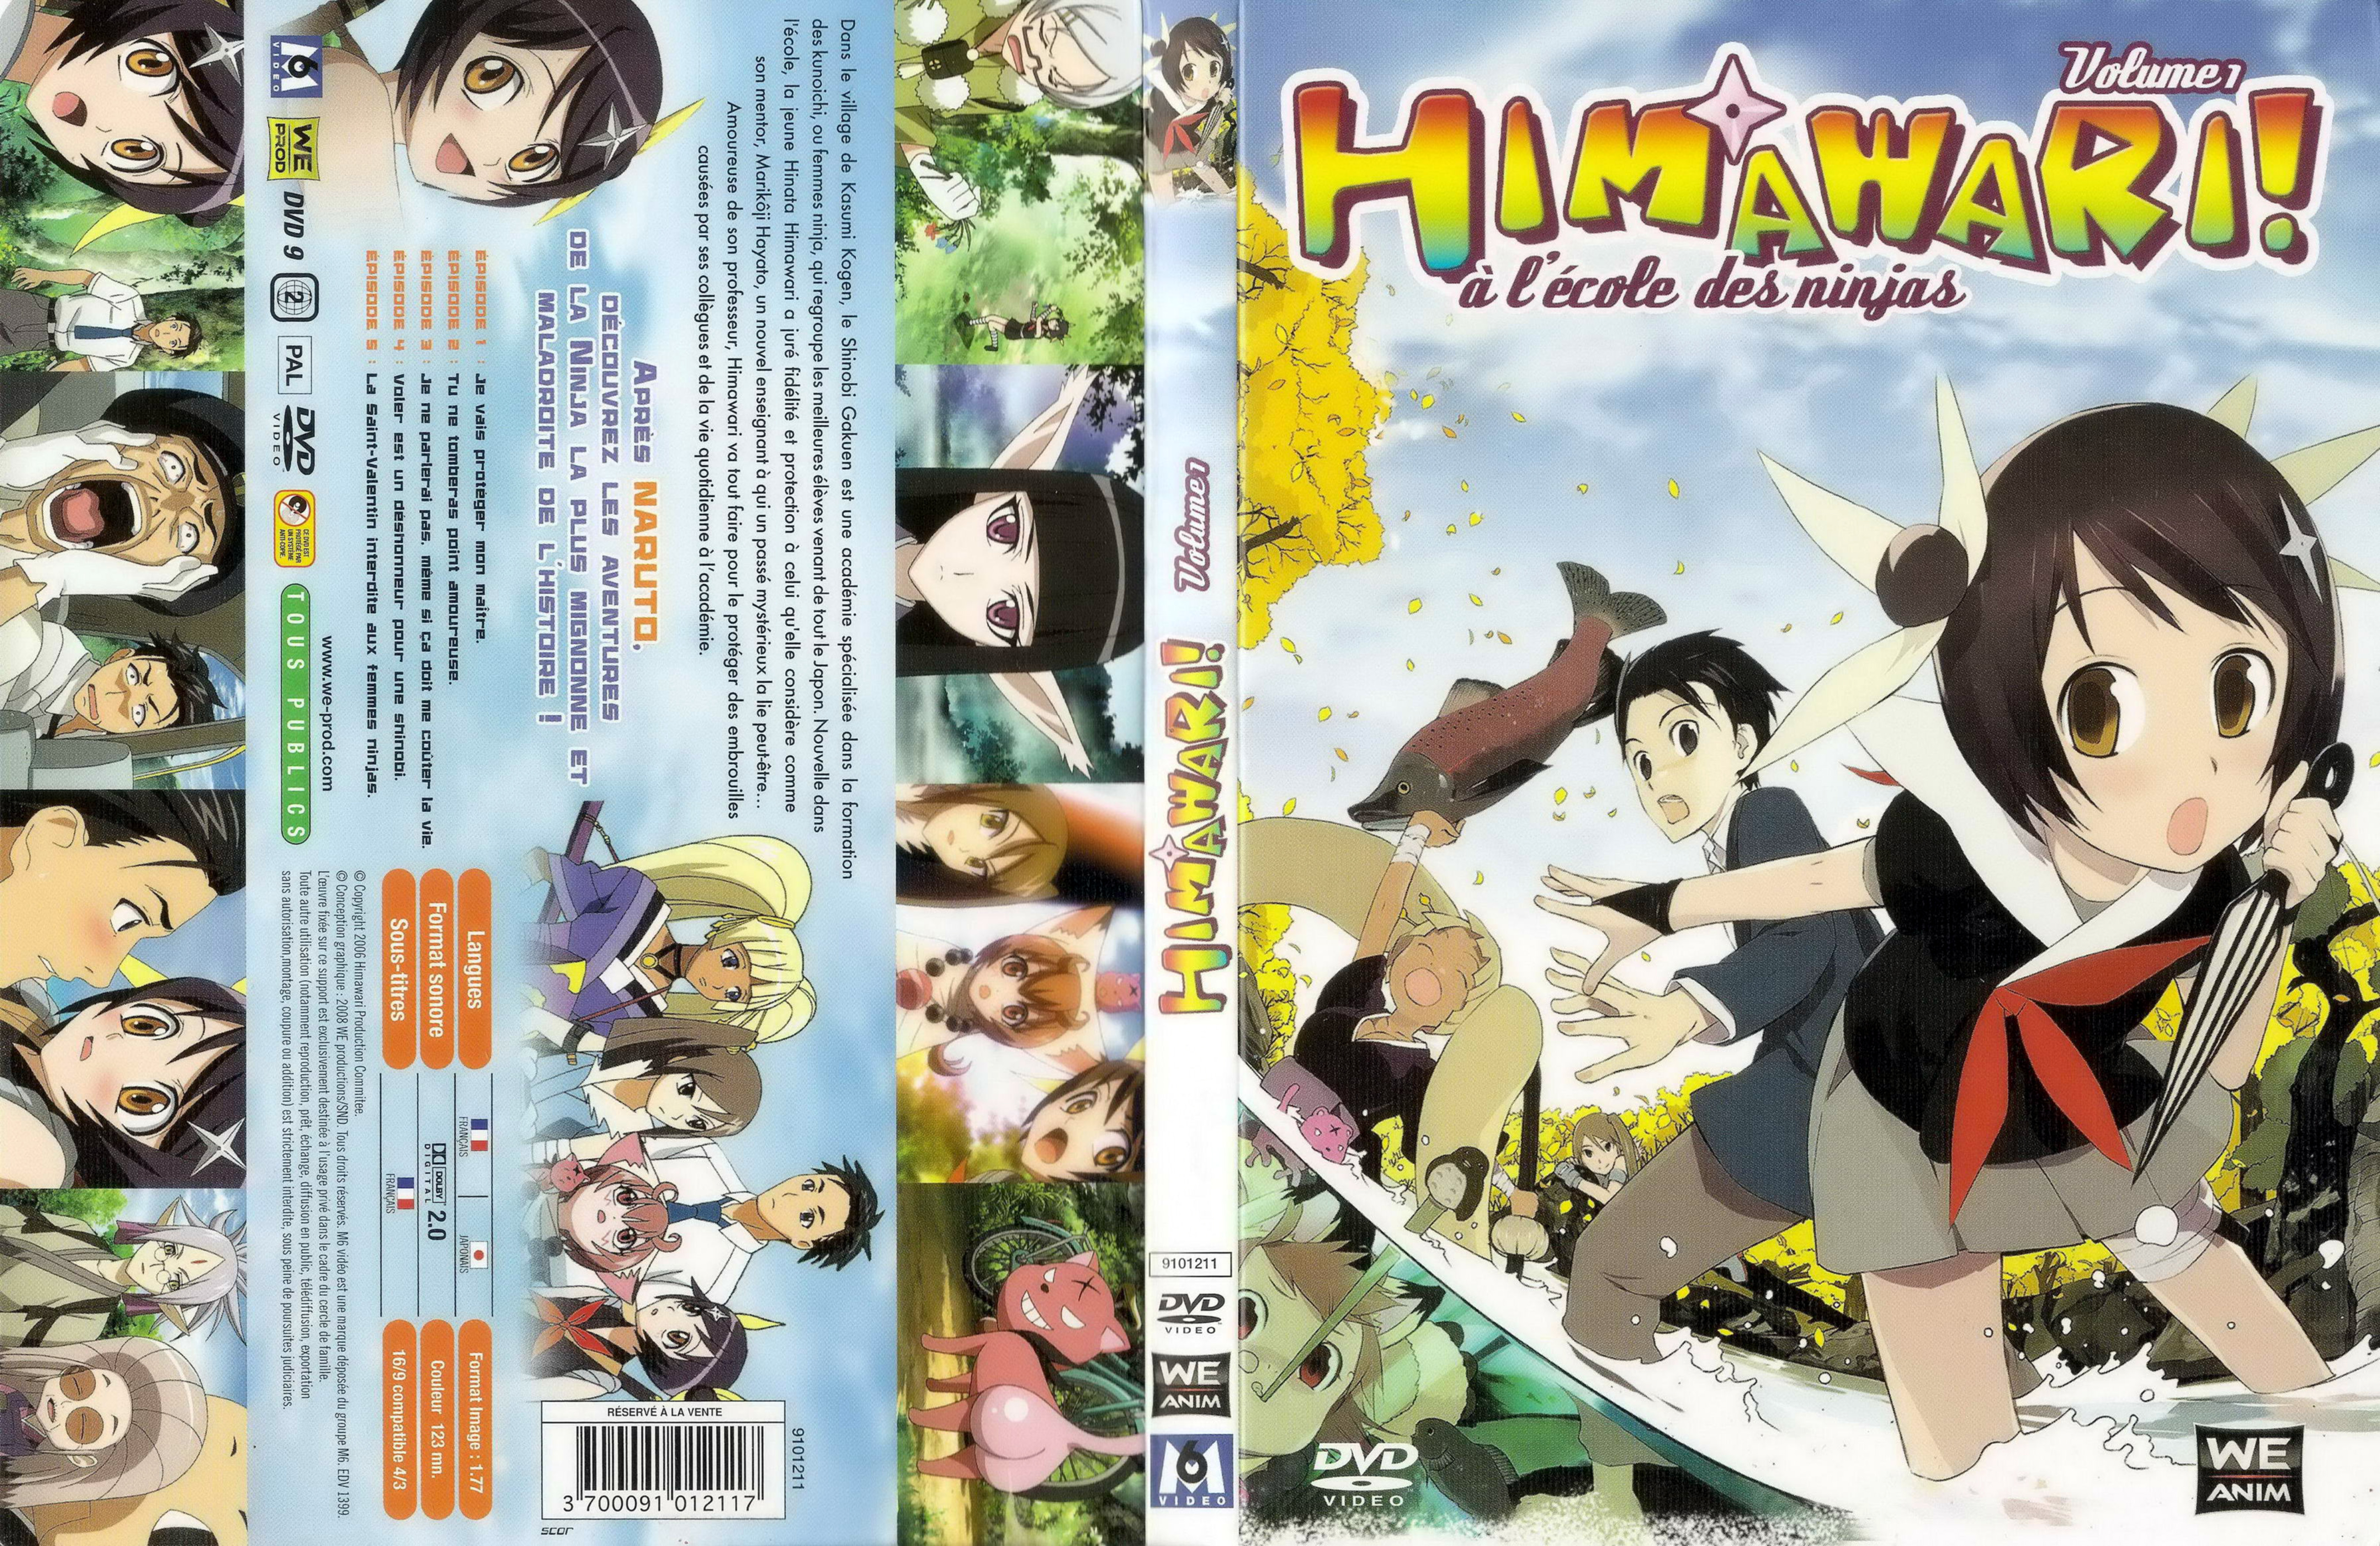 Jaquette DVD Himawari vol 01